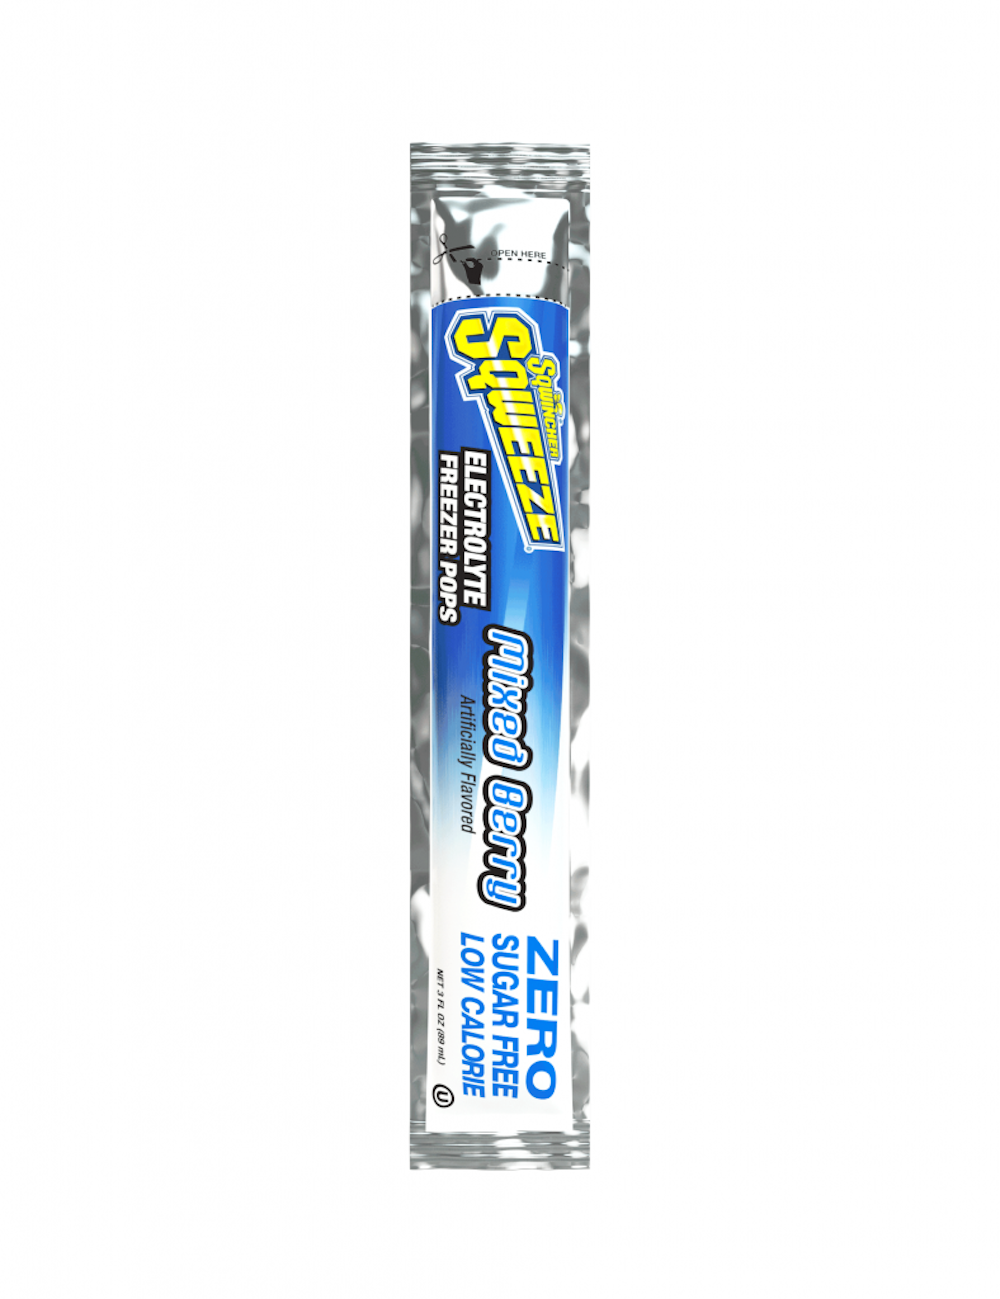 Sqwincher Zero Sugar Free Electrolyte Replenishment Freezer Pop, Variety Flavors, X478-W7600, Bag of 10